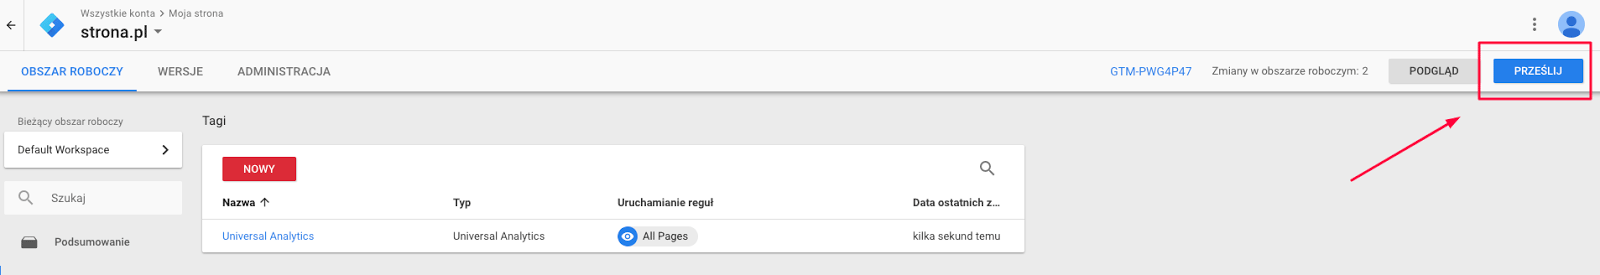 Publikacja zmian w Google tag manager